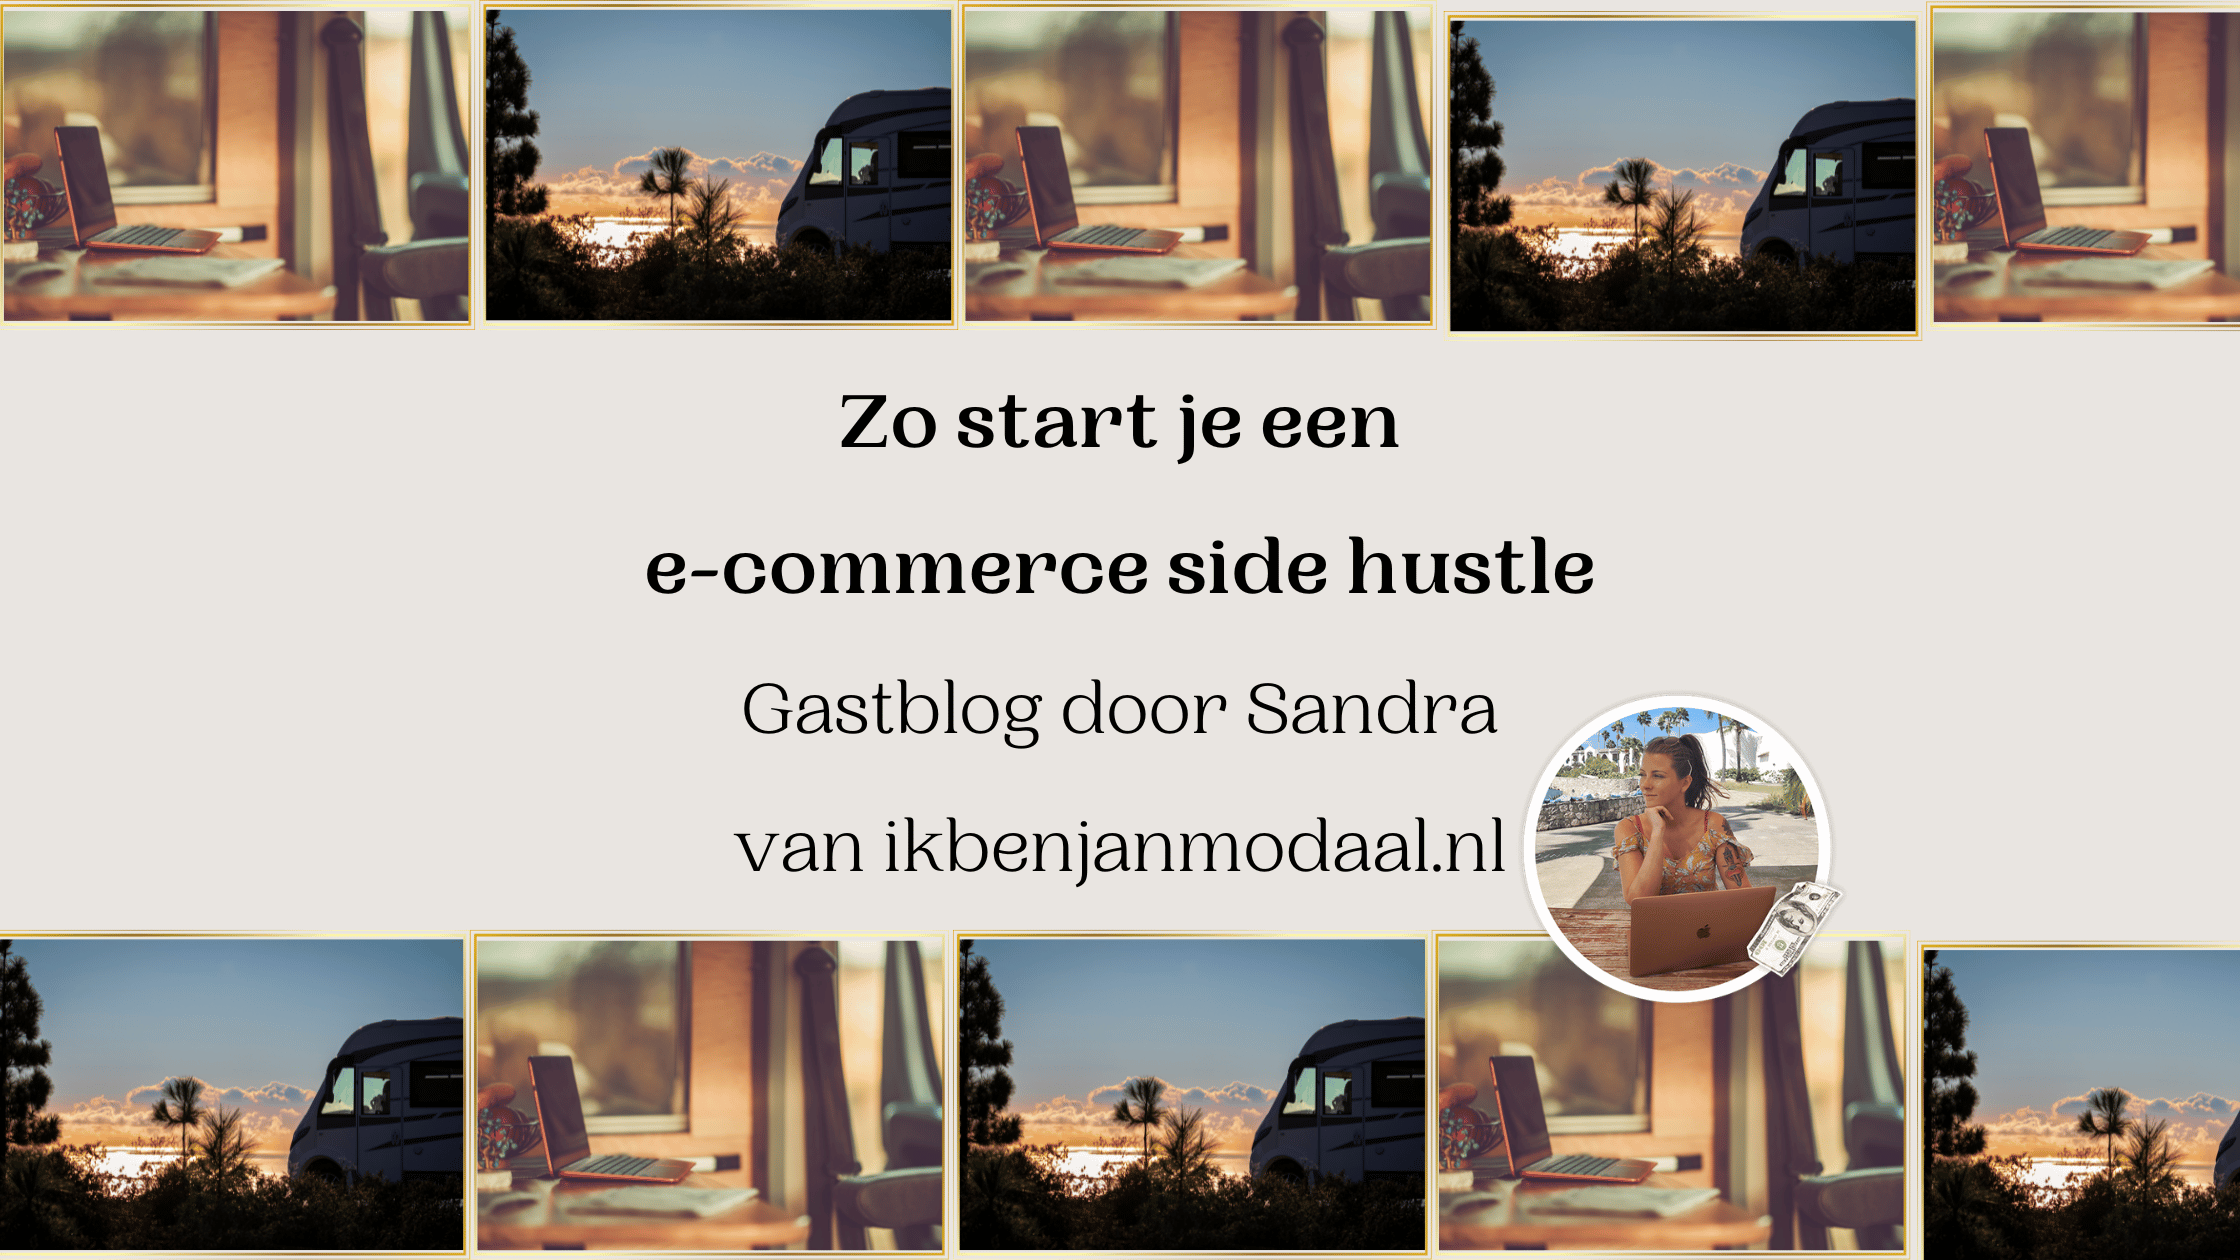 zo start je een side hustle in e-commerce gastblog door sandra